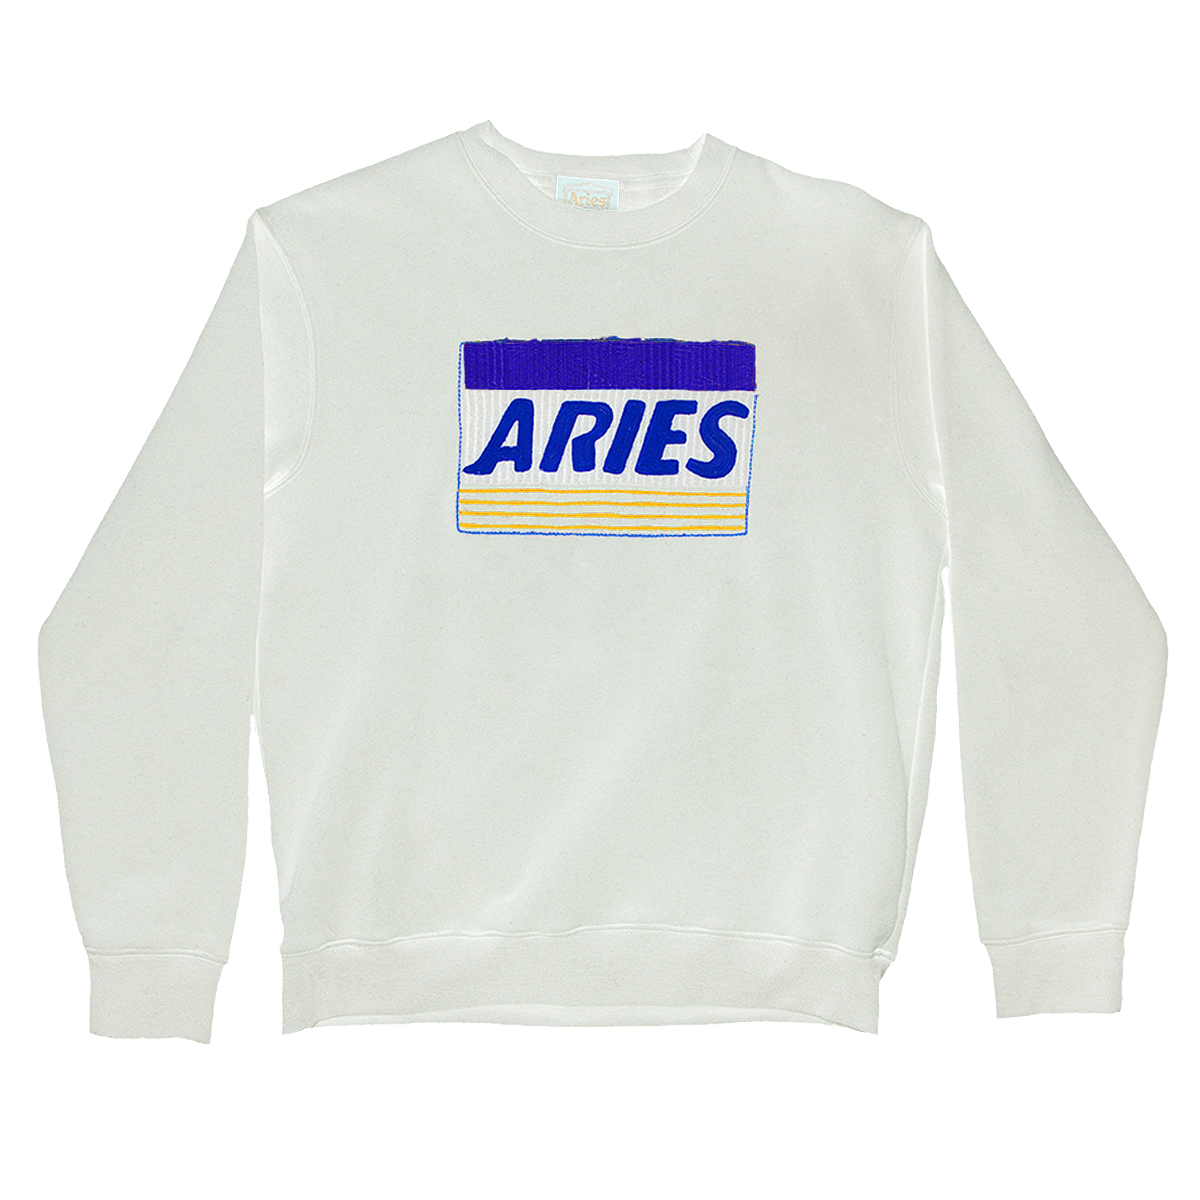 Aries Arise Credit Card Sweatshirt in Gray for Men